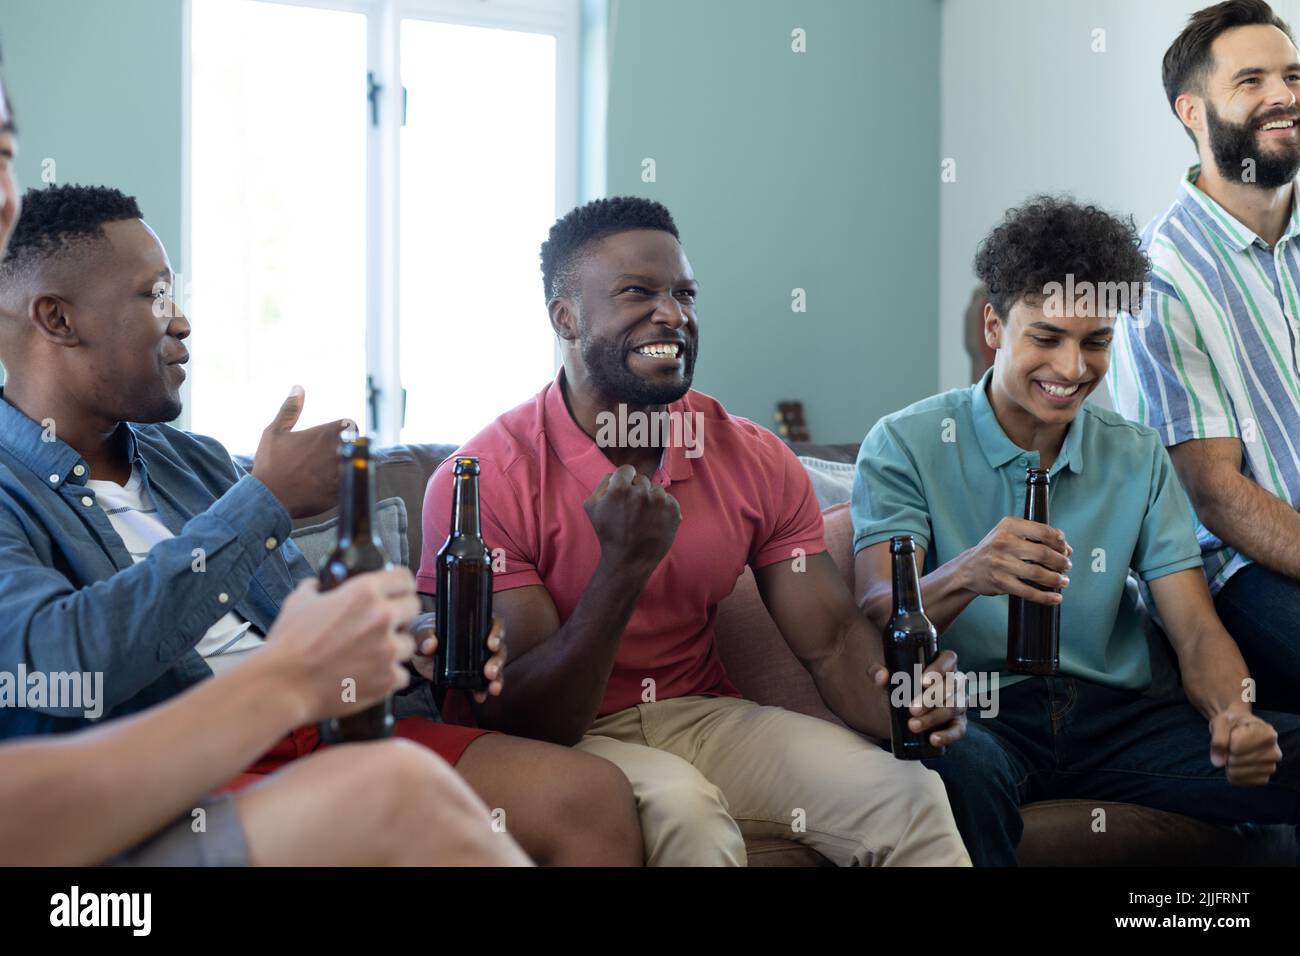 Allegro uomo multirazziale gesturing nella vittoria mentre godendo la partita con gli amici maschi a casa Foto Stock